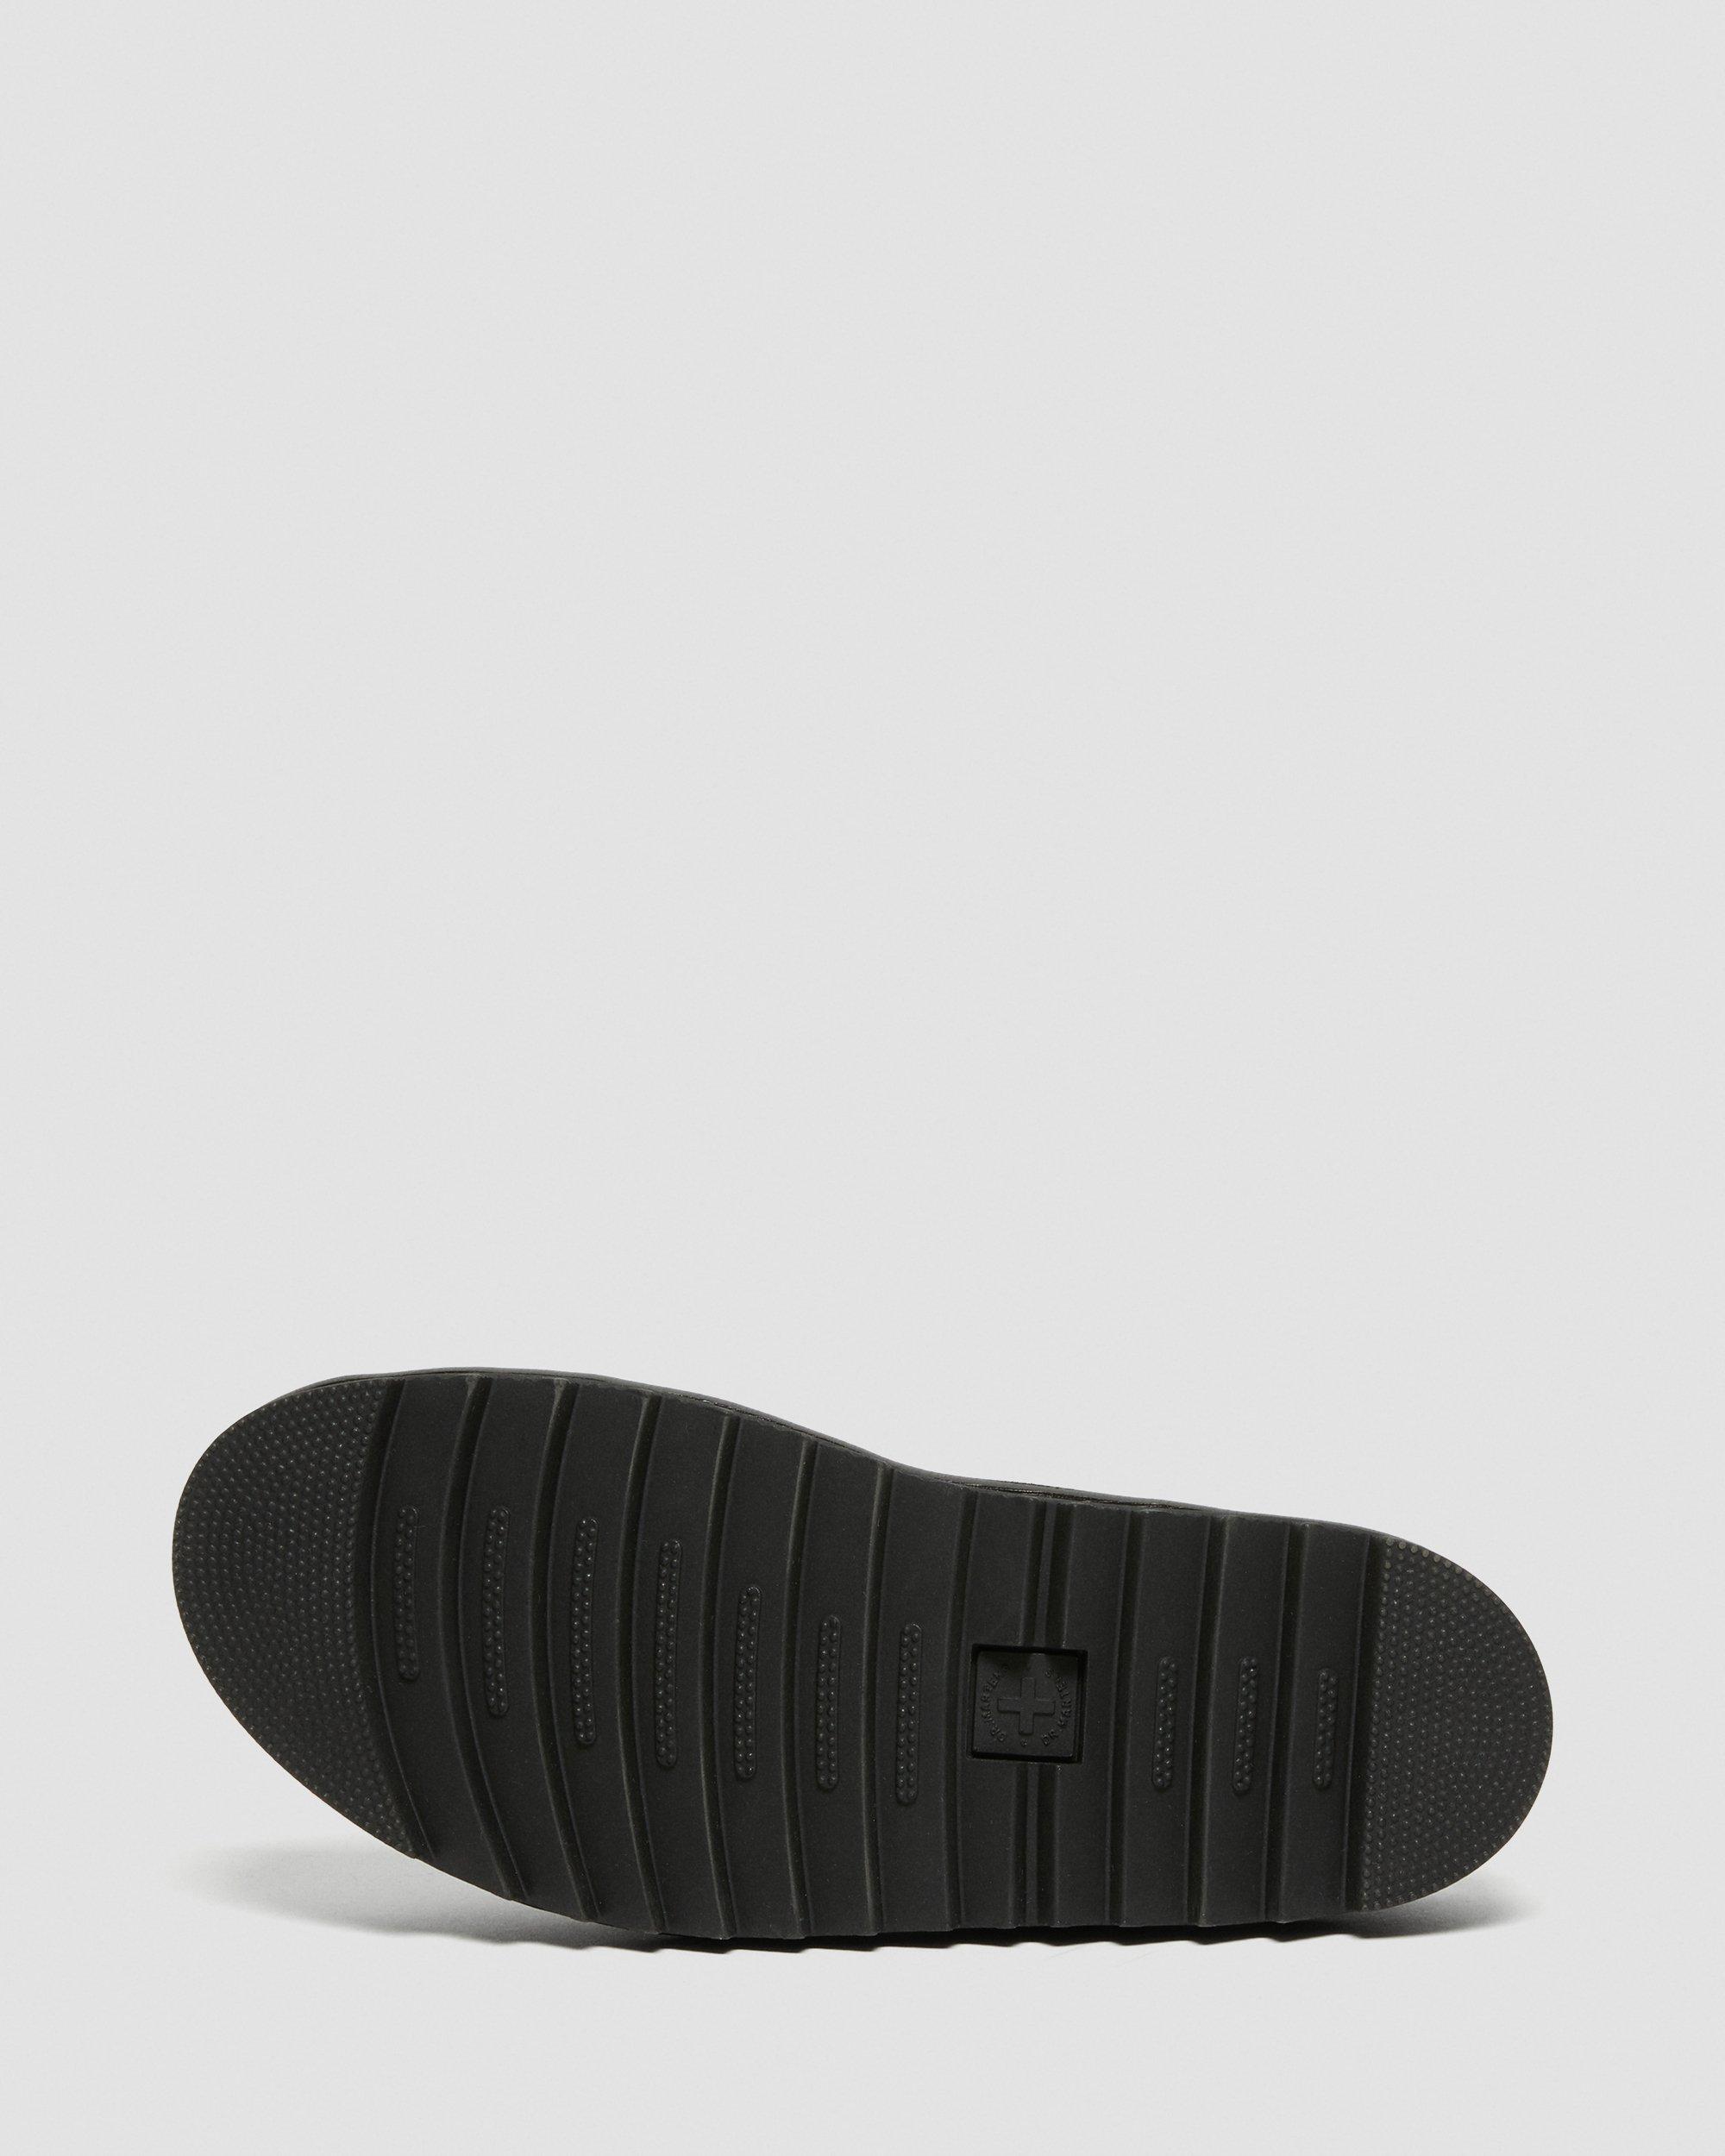 DR MARTENS Ryker Leather Strap Slide Sandals